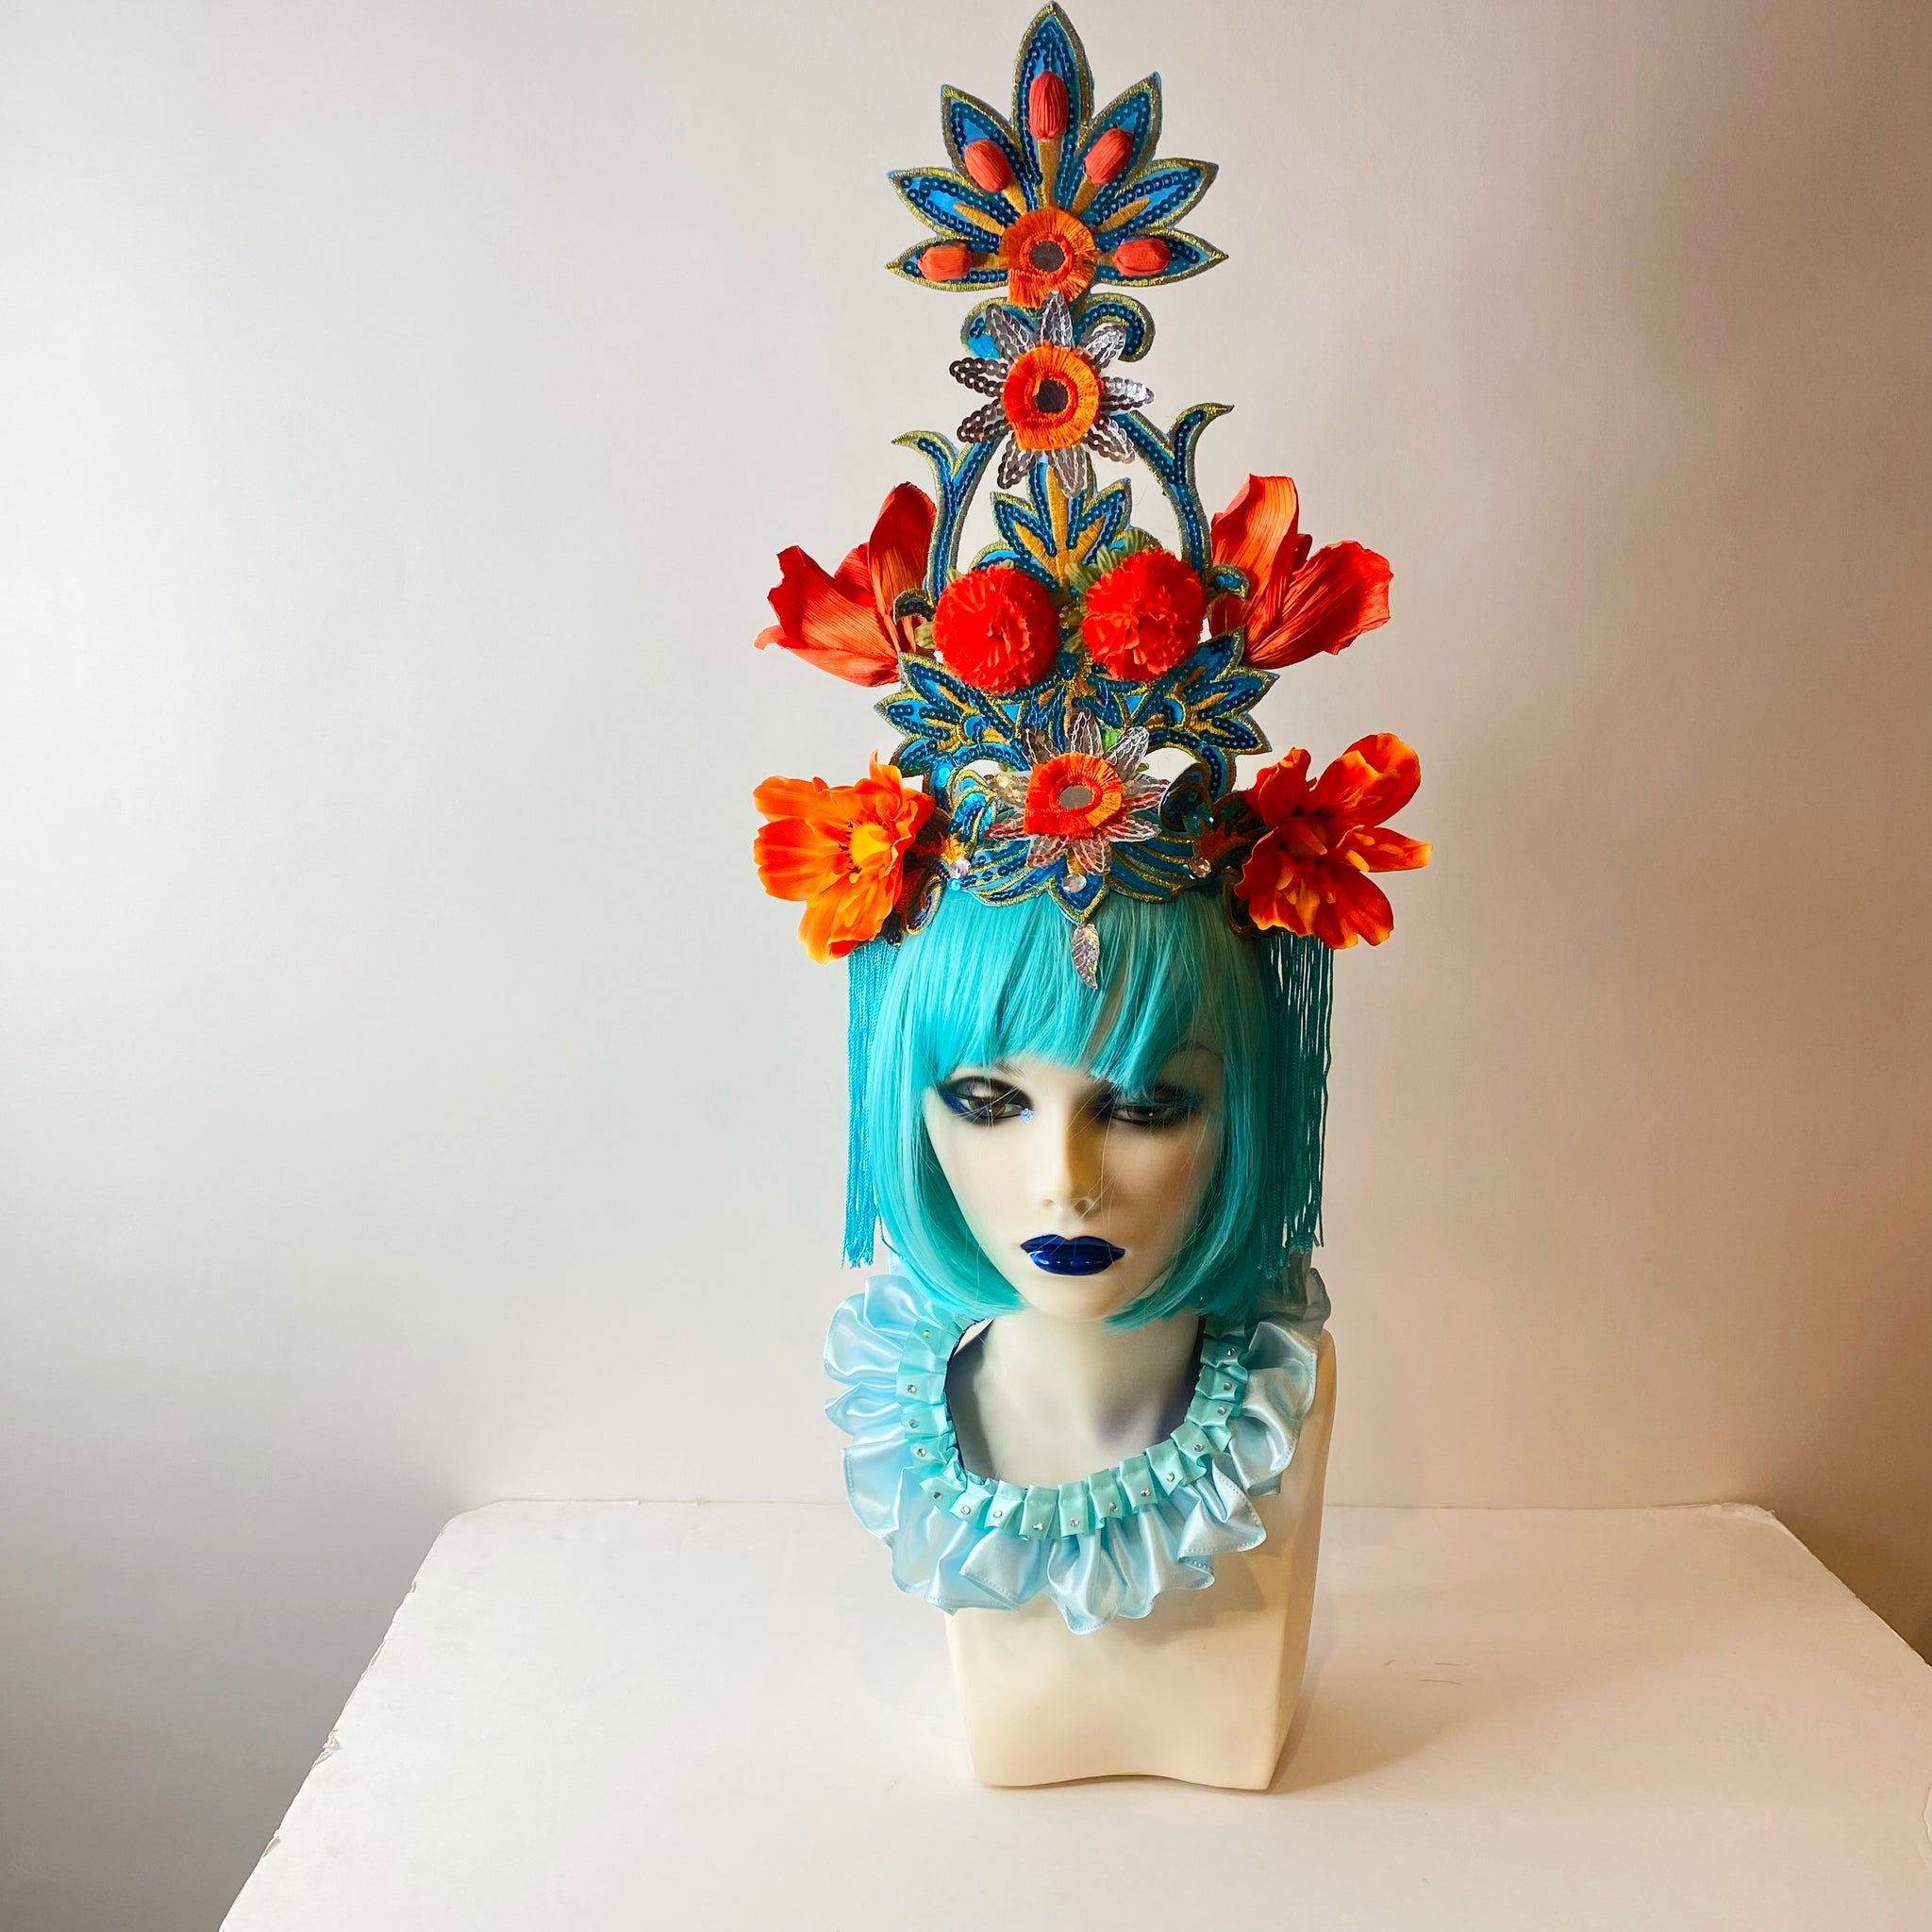 Flower Tower Headdress / Water